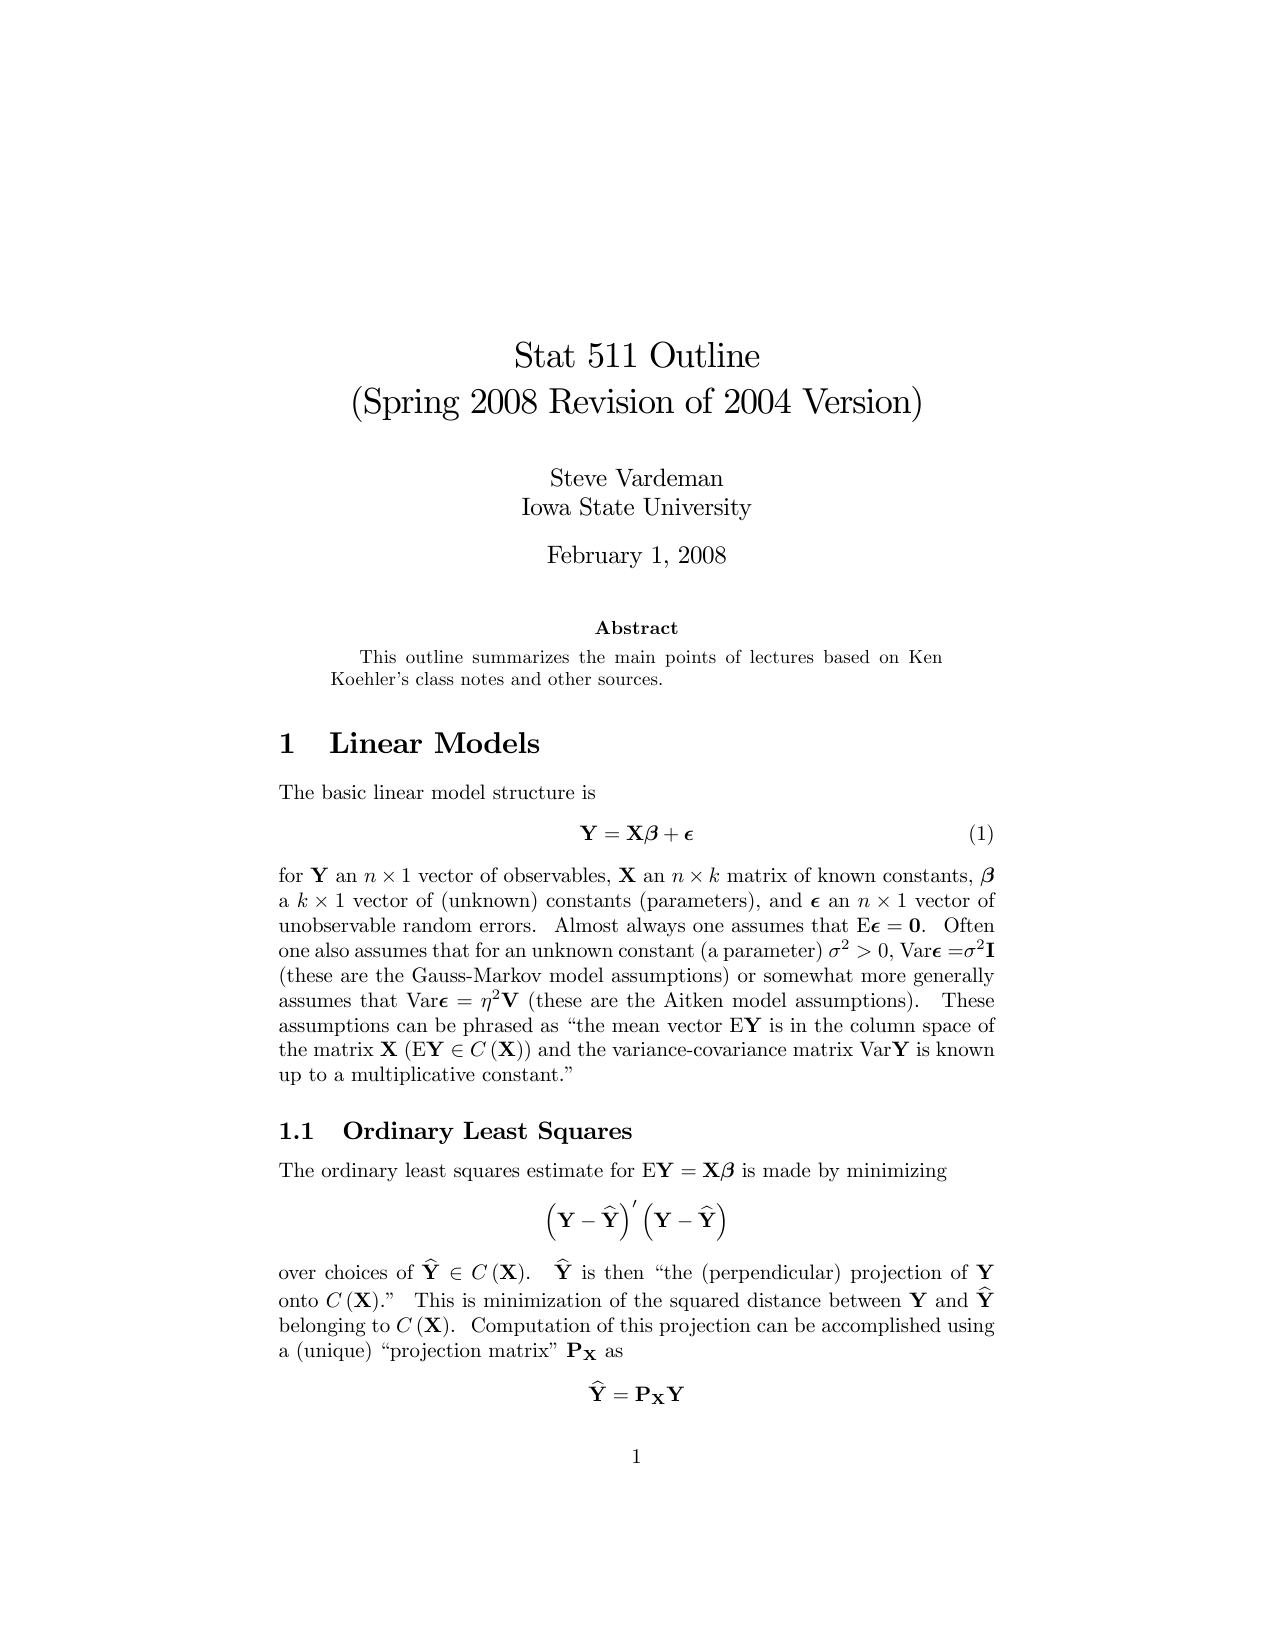 Stat 511 Outline Spring 08 Revision Of 04 Version Steve Vardeman